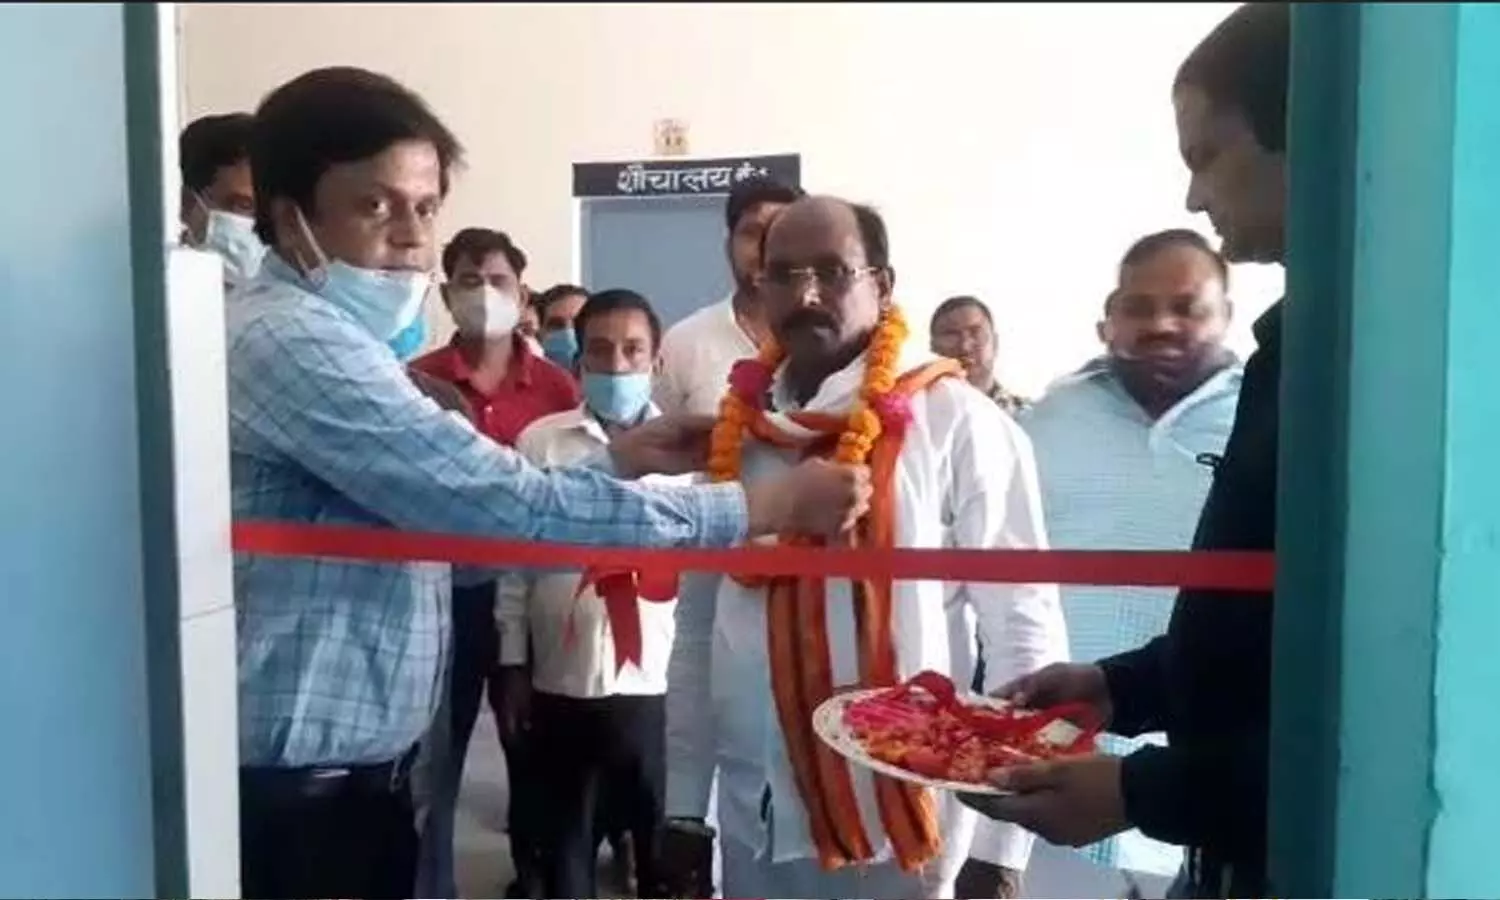 Shahjahanpur News: शाहजहांपुर सामुदायिक स्वास्थ्य केंद्र में बीजेपी विधायक ने लगवाया ऑक्सीजन प्लांट